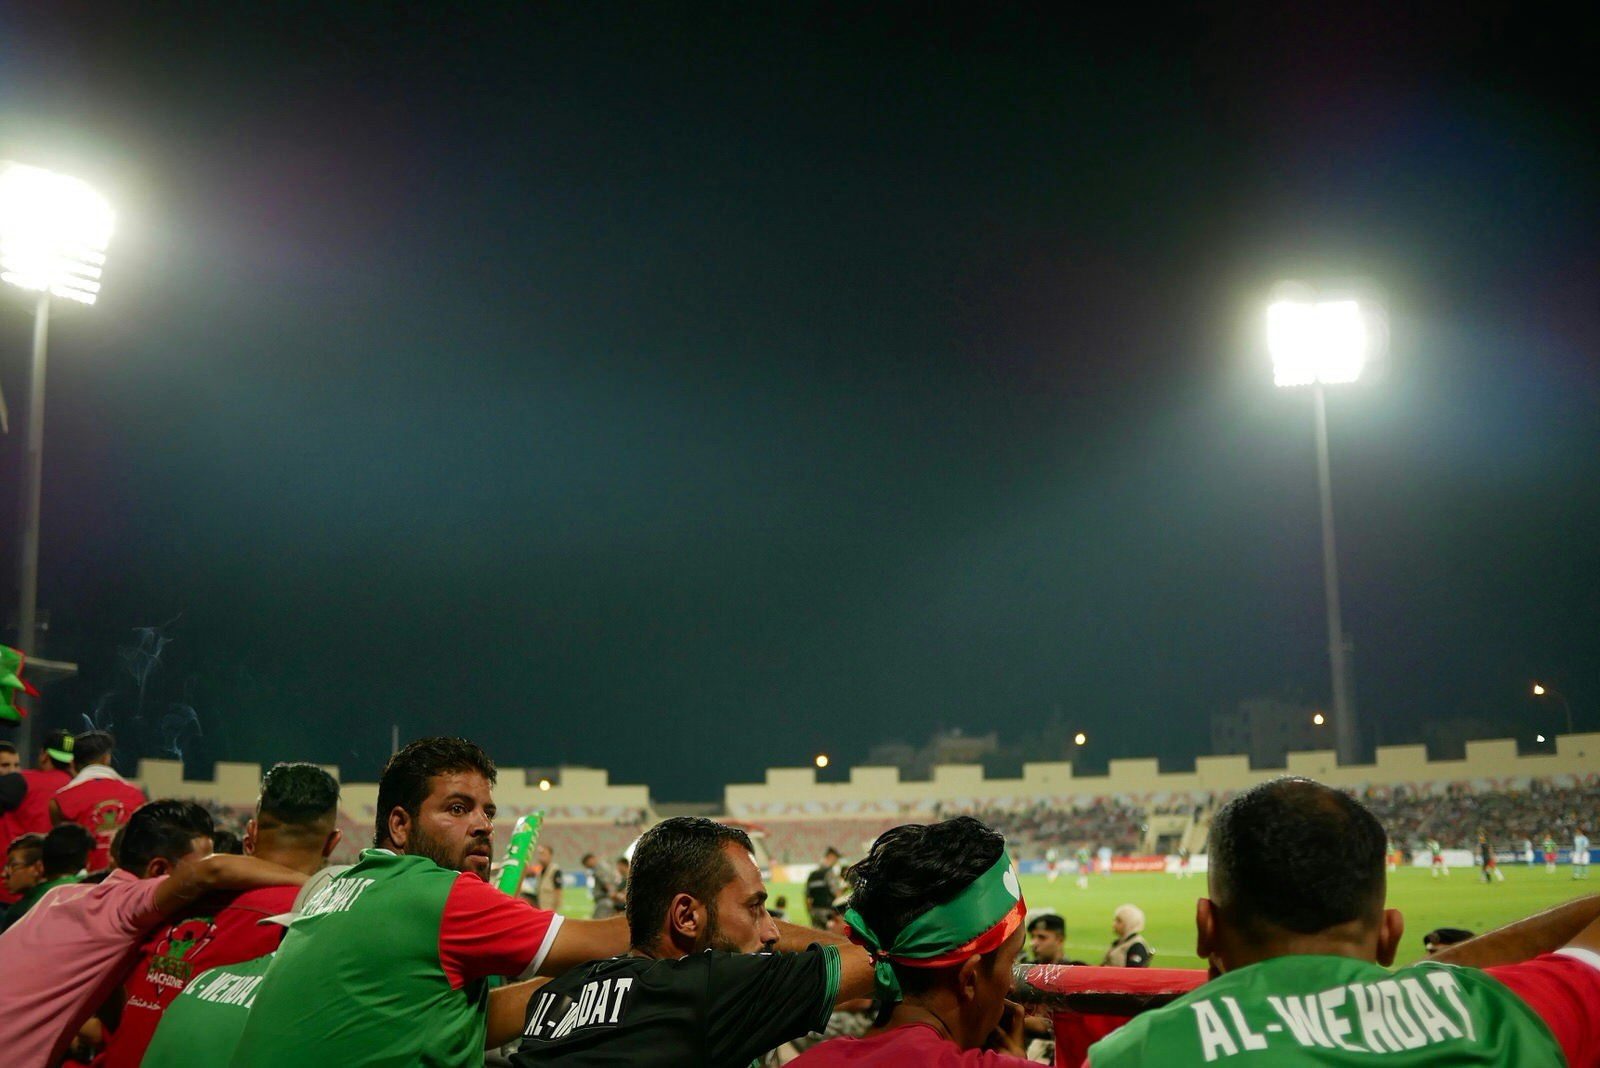 Wehdat fans at a football match against Al Faisaly near Amman, Jordan